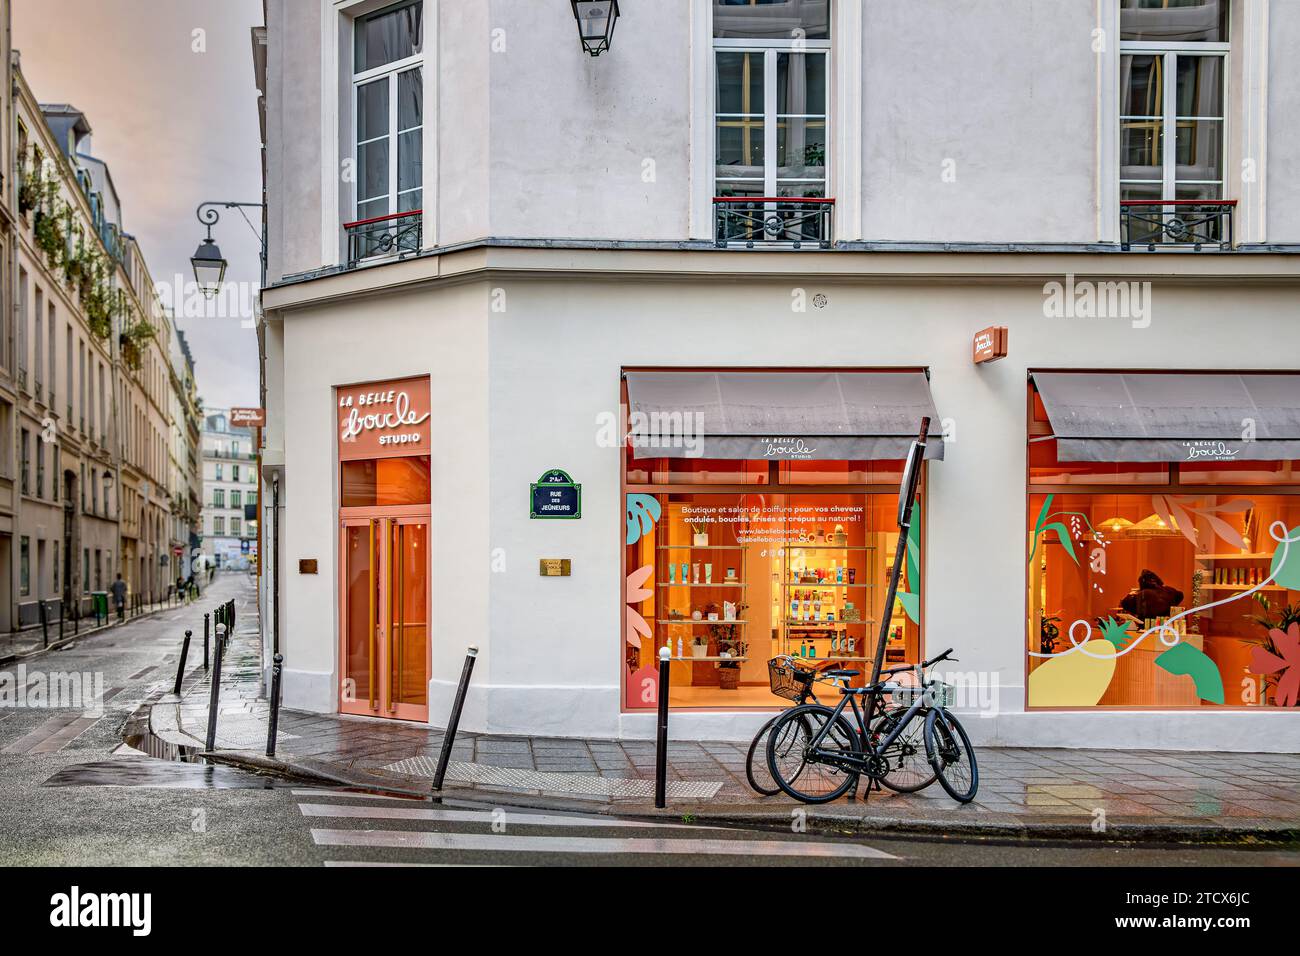 La Belle boucle Studio, un salon de coiffure et une boutique au 25 rue du Sentier, Paris, France Banque D'Images